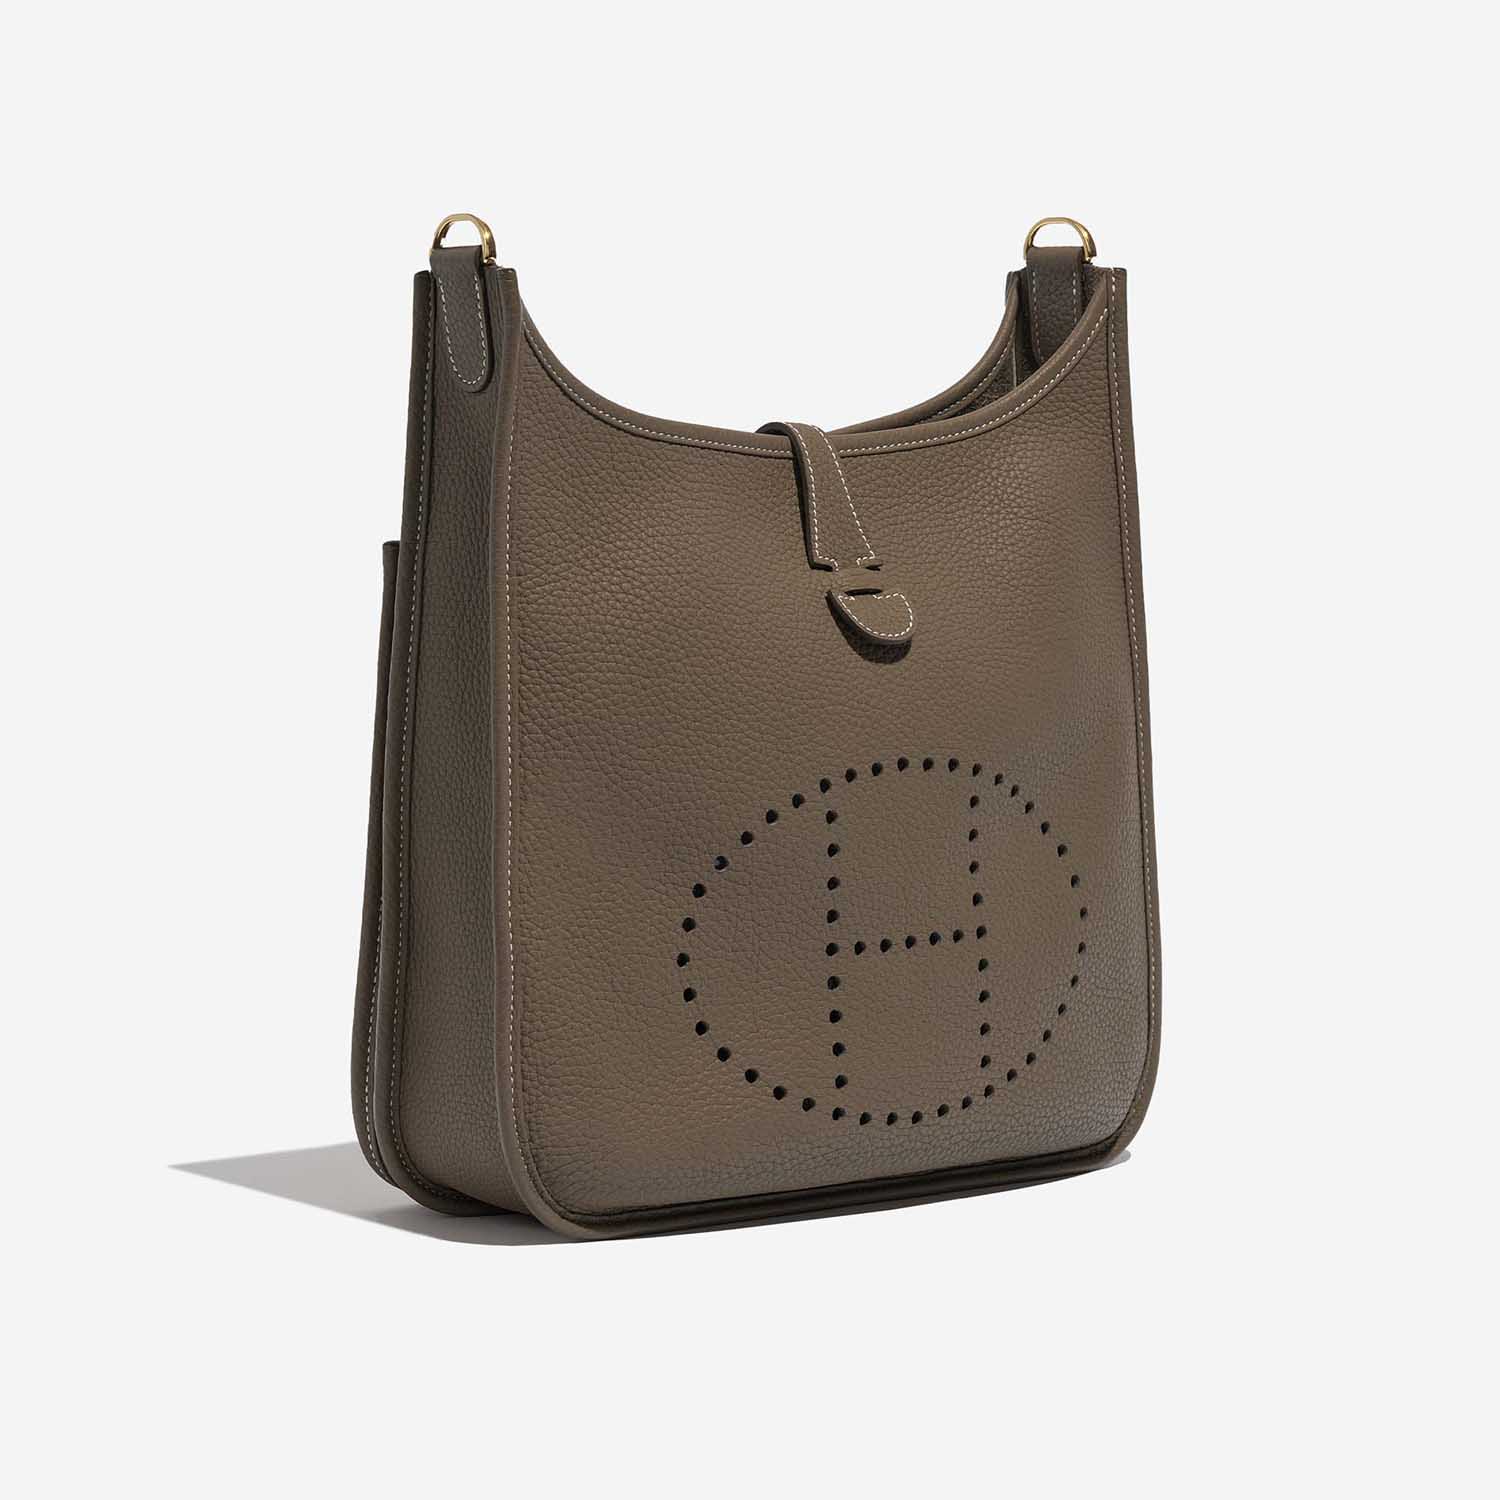 Pre-owned Hermès Tasche Evelyne 29 Taurillon Clemence Etoupe Brown Side Front | Verkaufen Sie Ihre Designer-Tasche auf Saclab.com